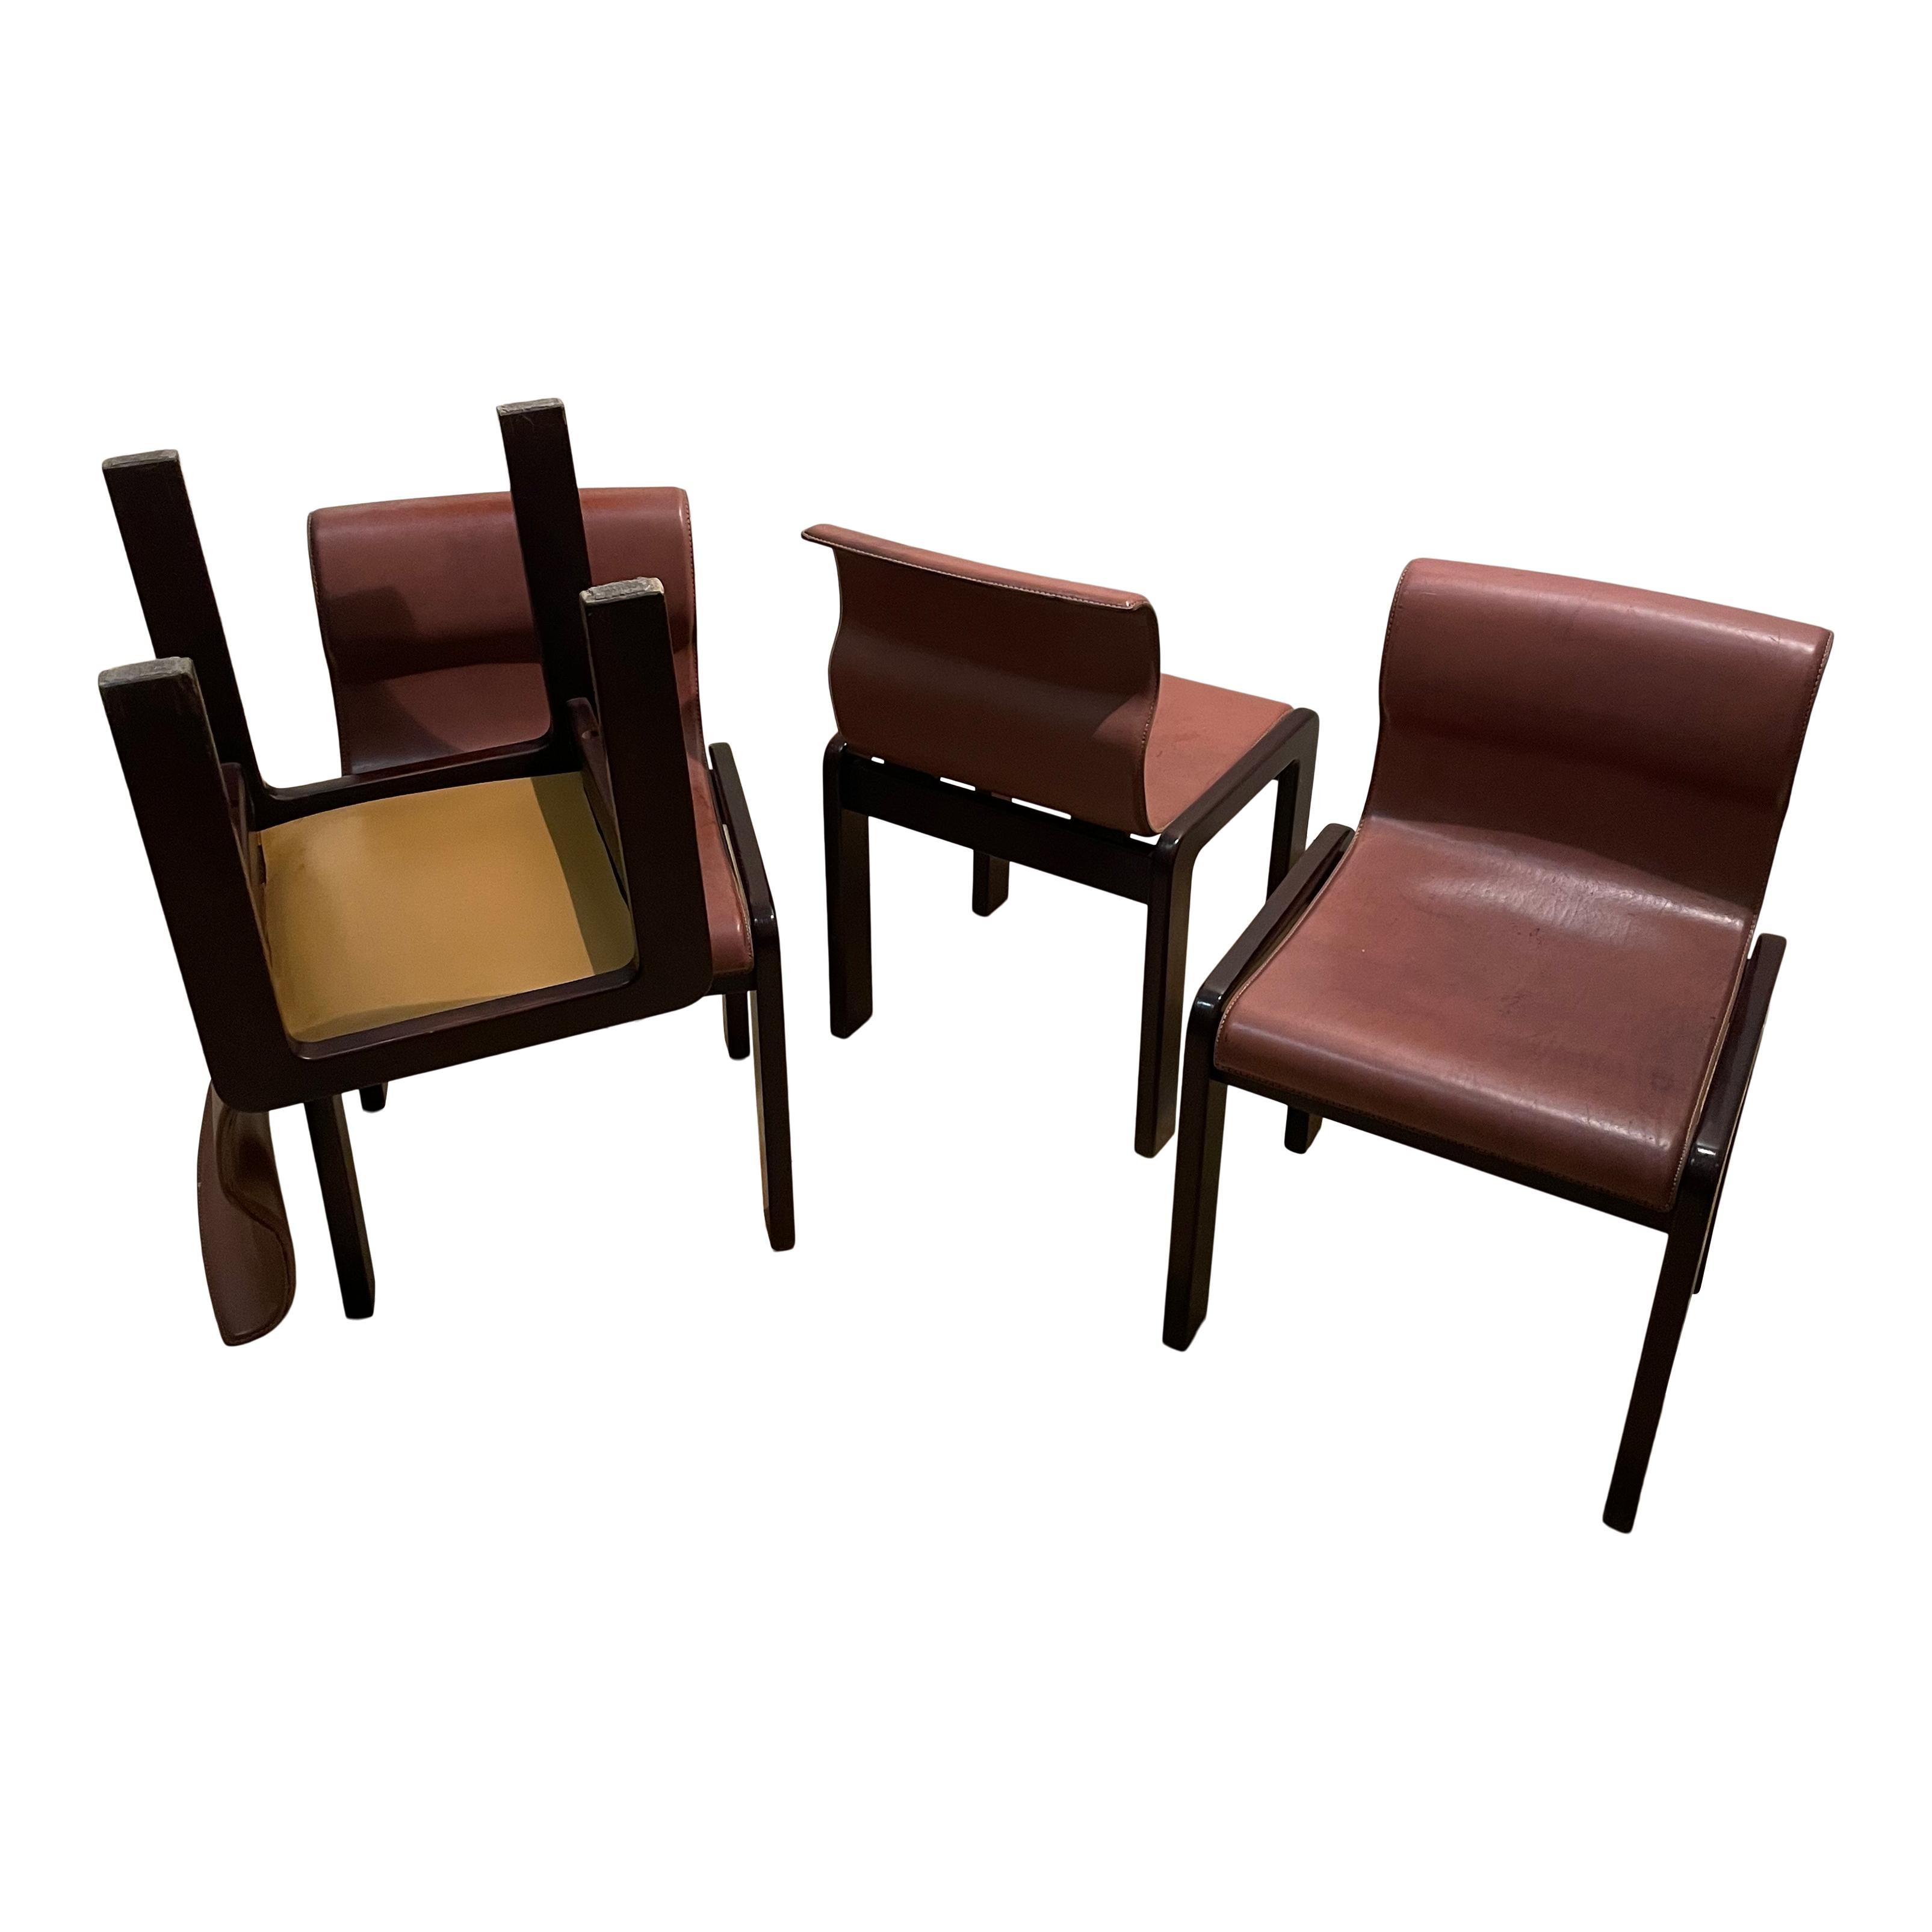 Satz von vier Esszimmerstühlen, entworfen von Afra & Tobia Scarpa in den späten 60er Jahren. Die Form präsentiert einige Lösungen, die auch in anderen Scarpa-Projekten zu finden sind. Die Beine aus Nussbaumholz mit ihrer doppelten Gestellstruktur